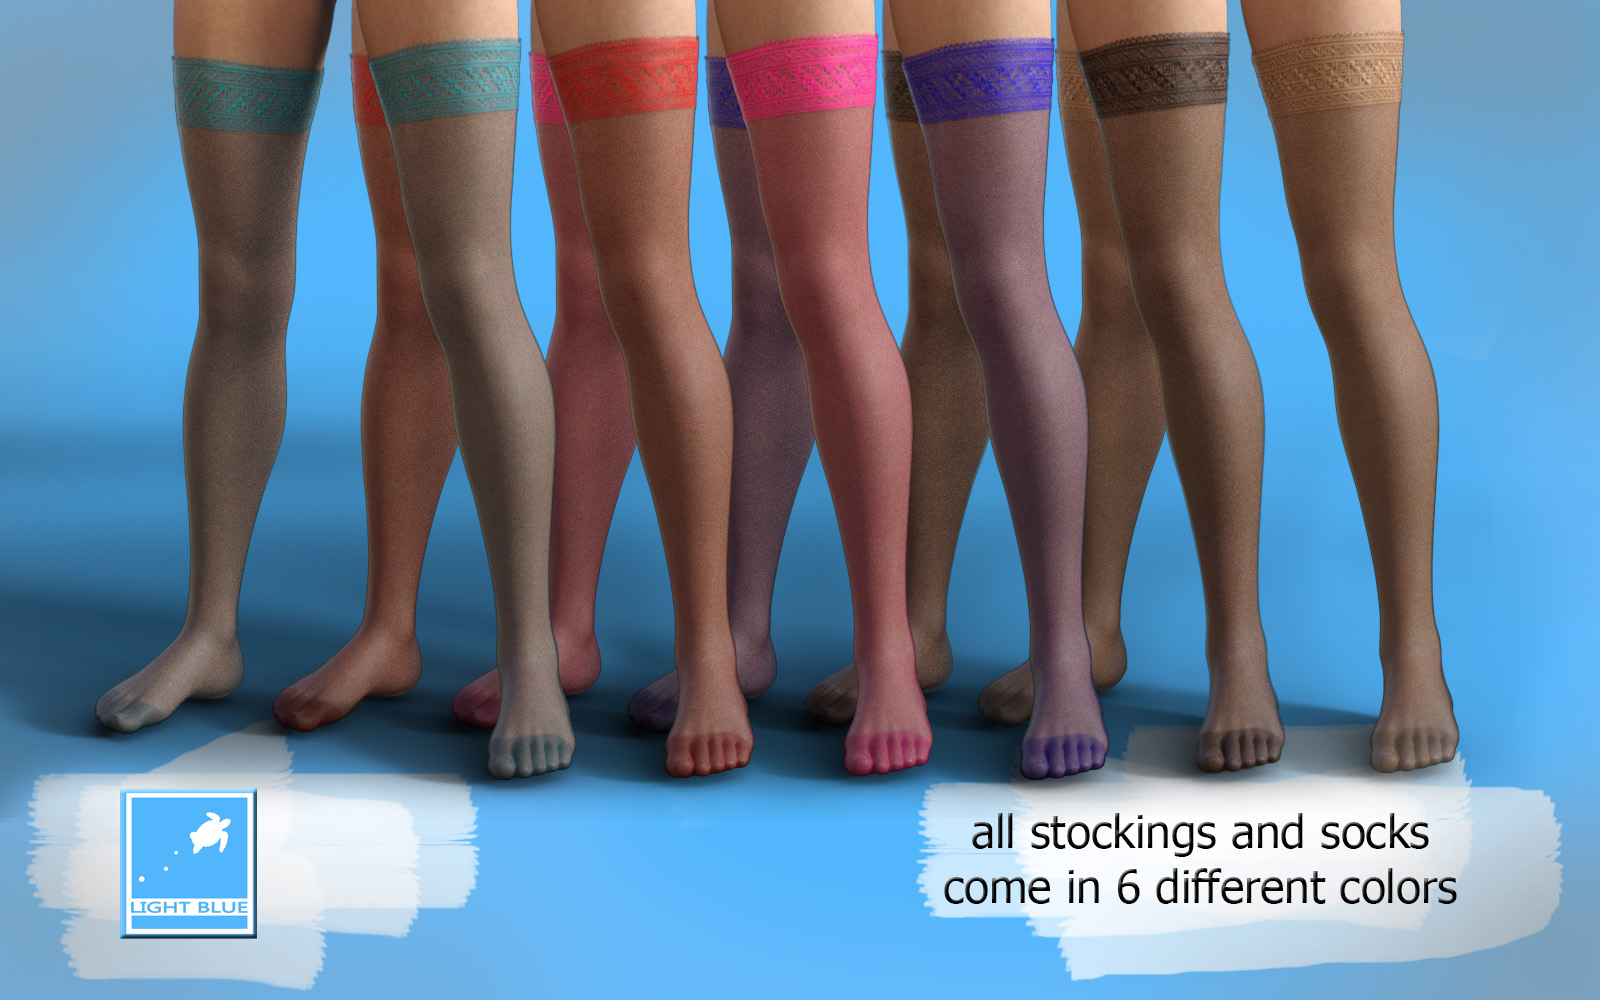 lightBLUE-dFORCE-Stocking-Sock-Colors.jpg